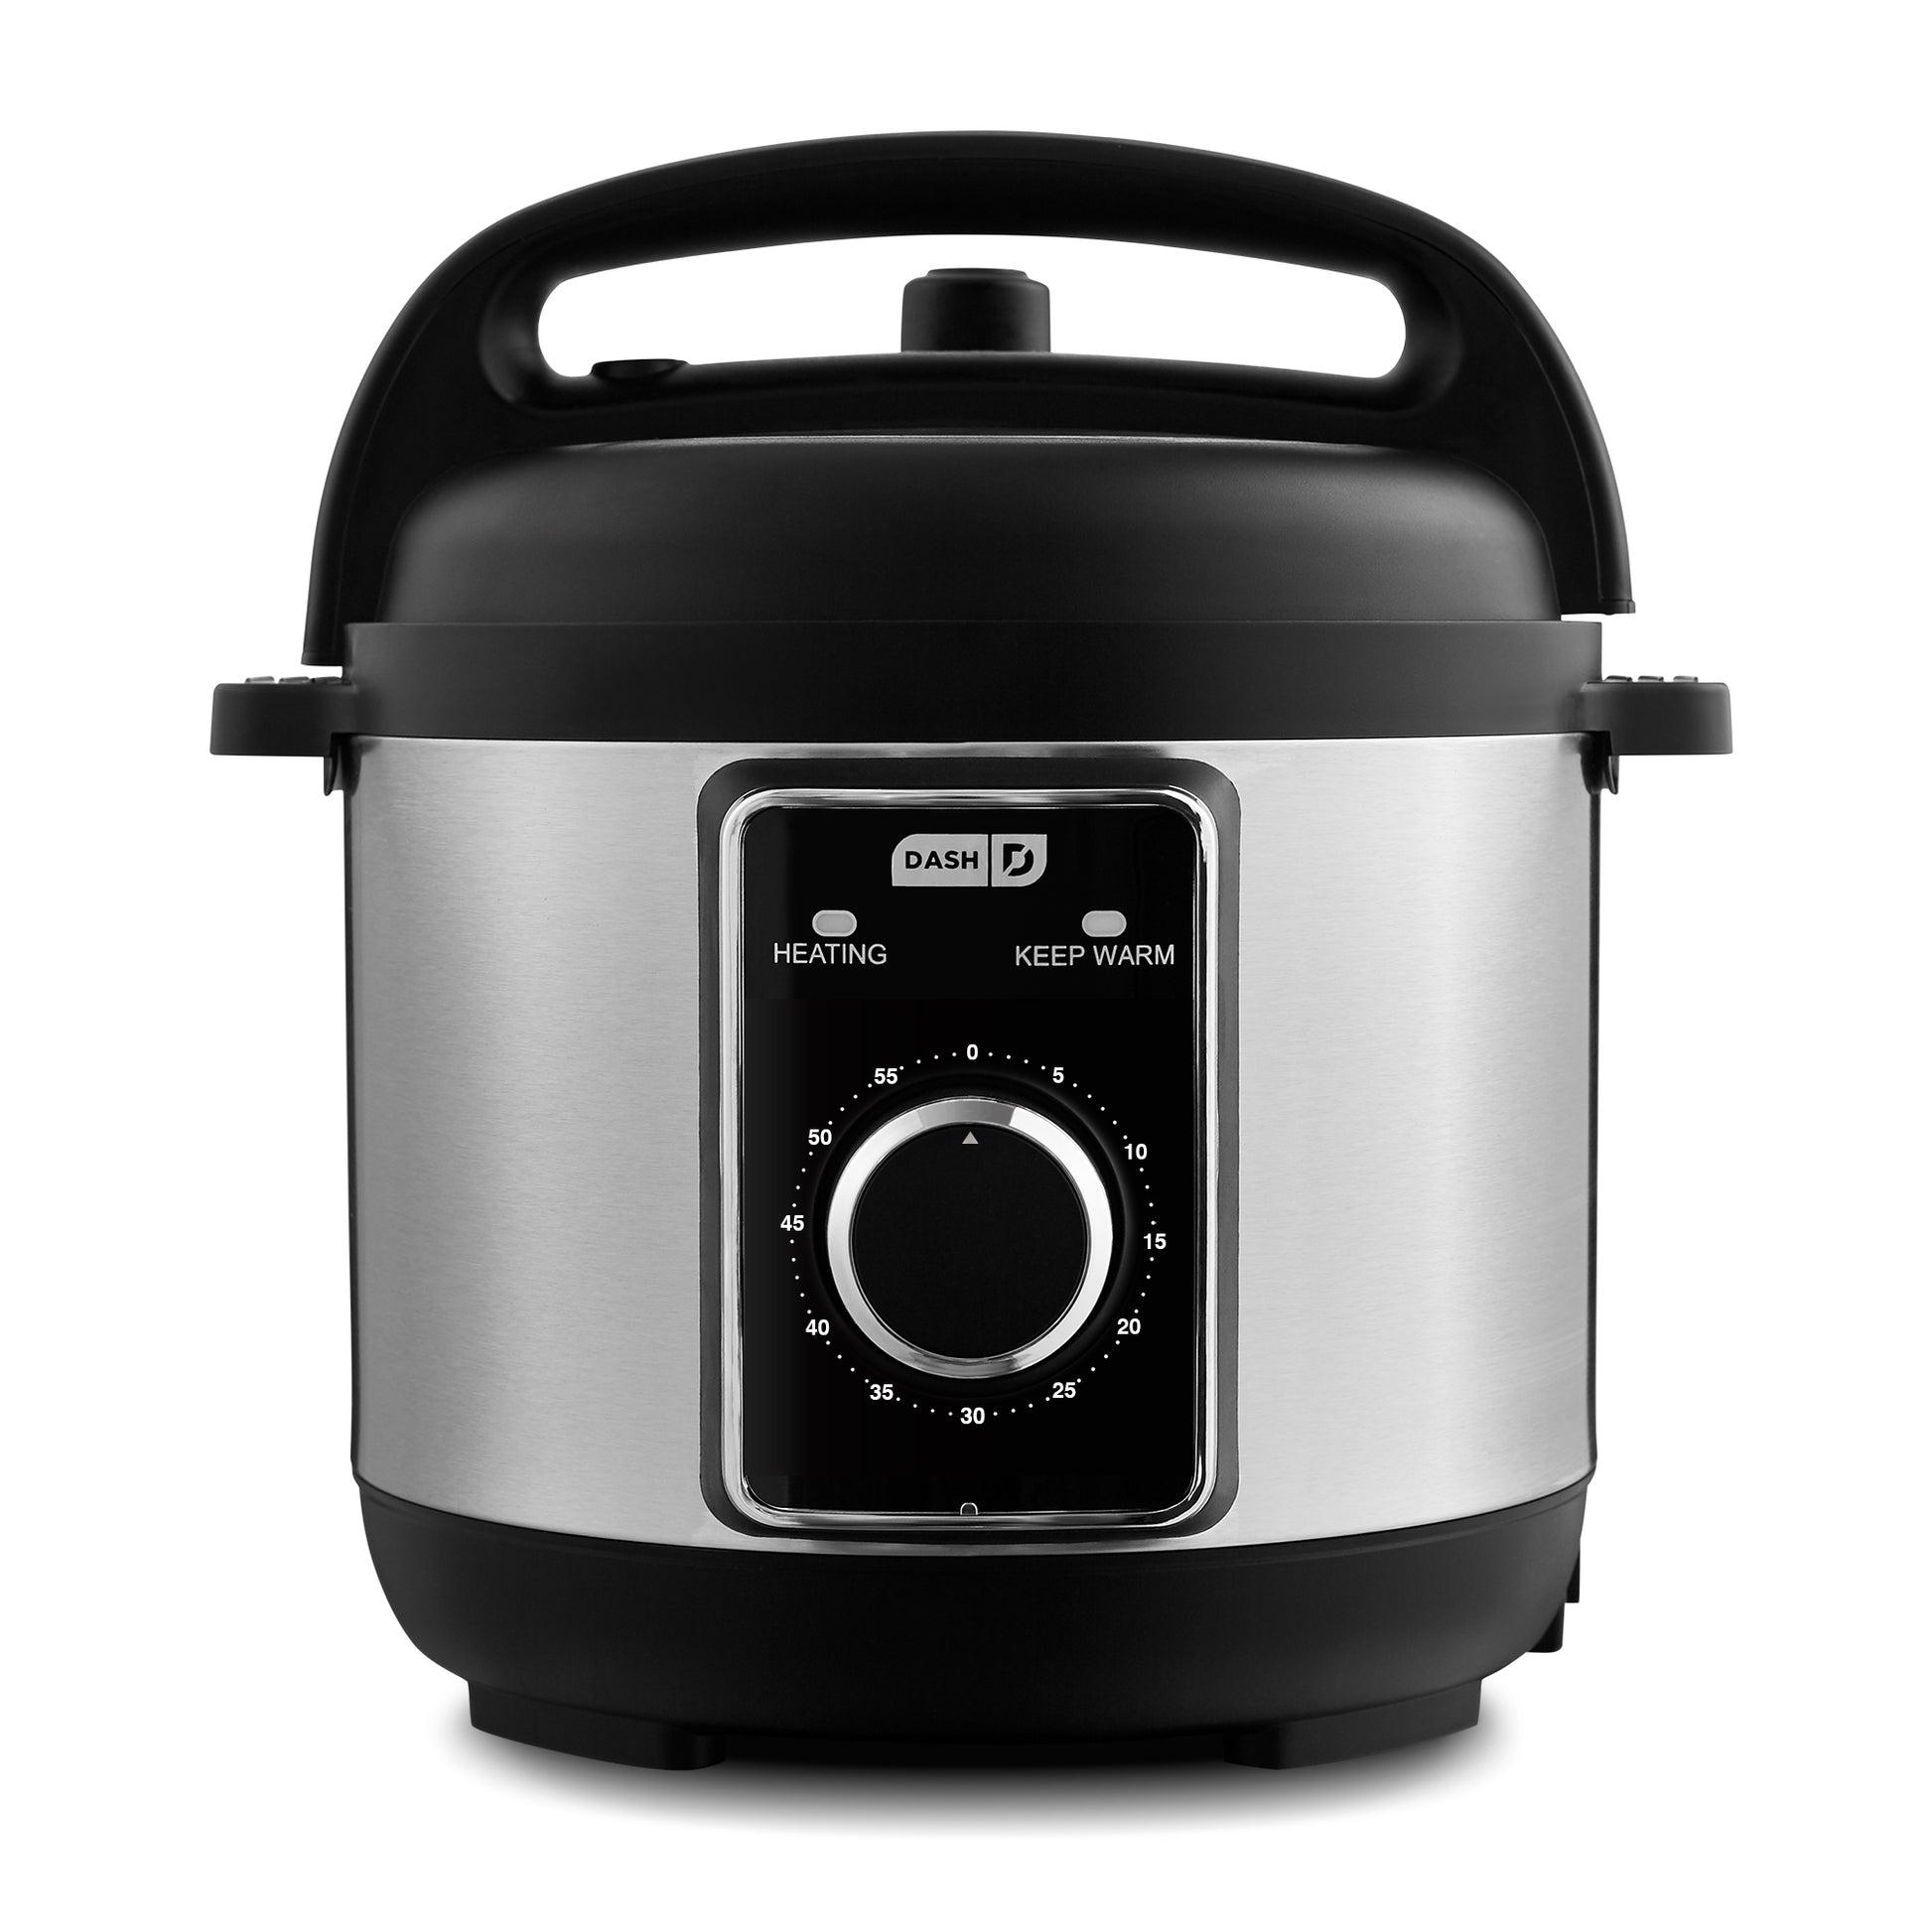 Super Pot 2Qt Pressure Cooker – Dash